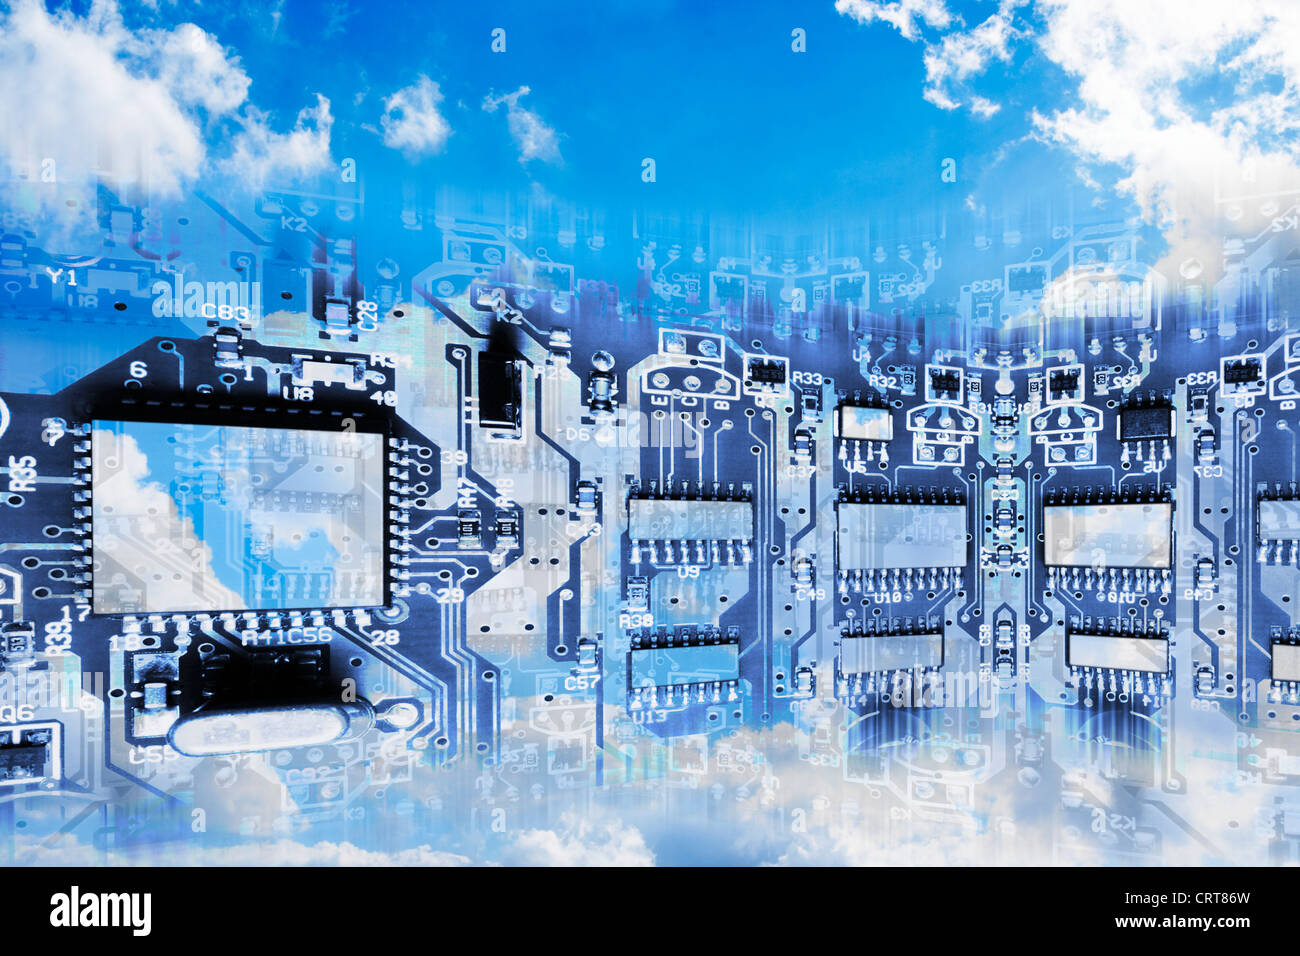 Circuito impreso superpuesto sobre el cielo nublado- Imagen conceptual de la Cloud Computing Foto de stock